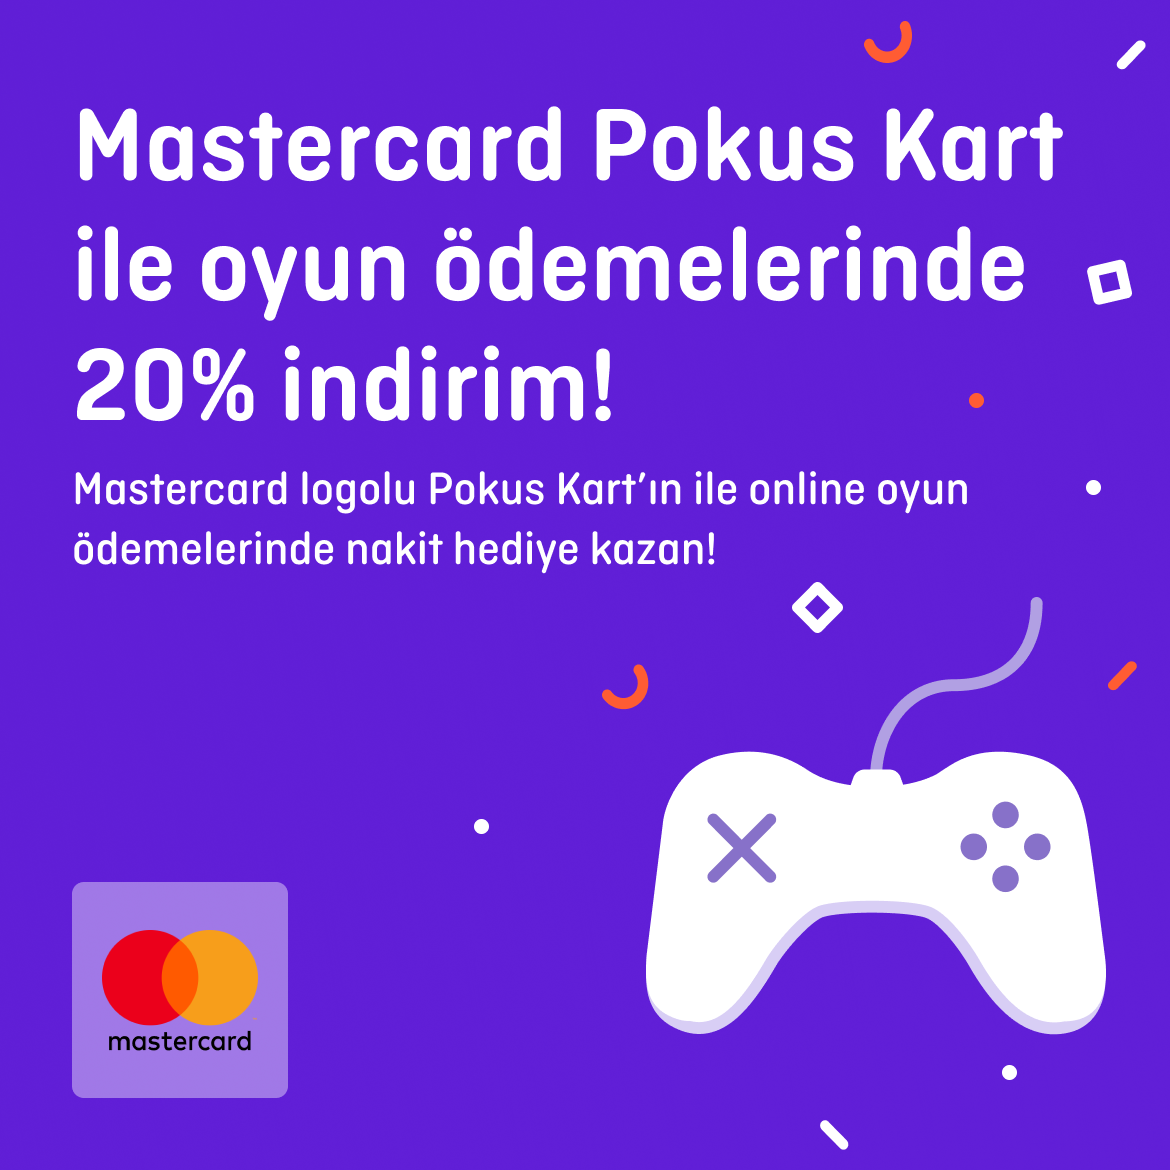 >Mastercard logolu Pokus Kart’ın ile online oyun ödemelerinde 20% indirim!